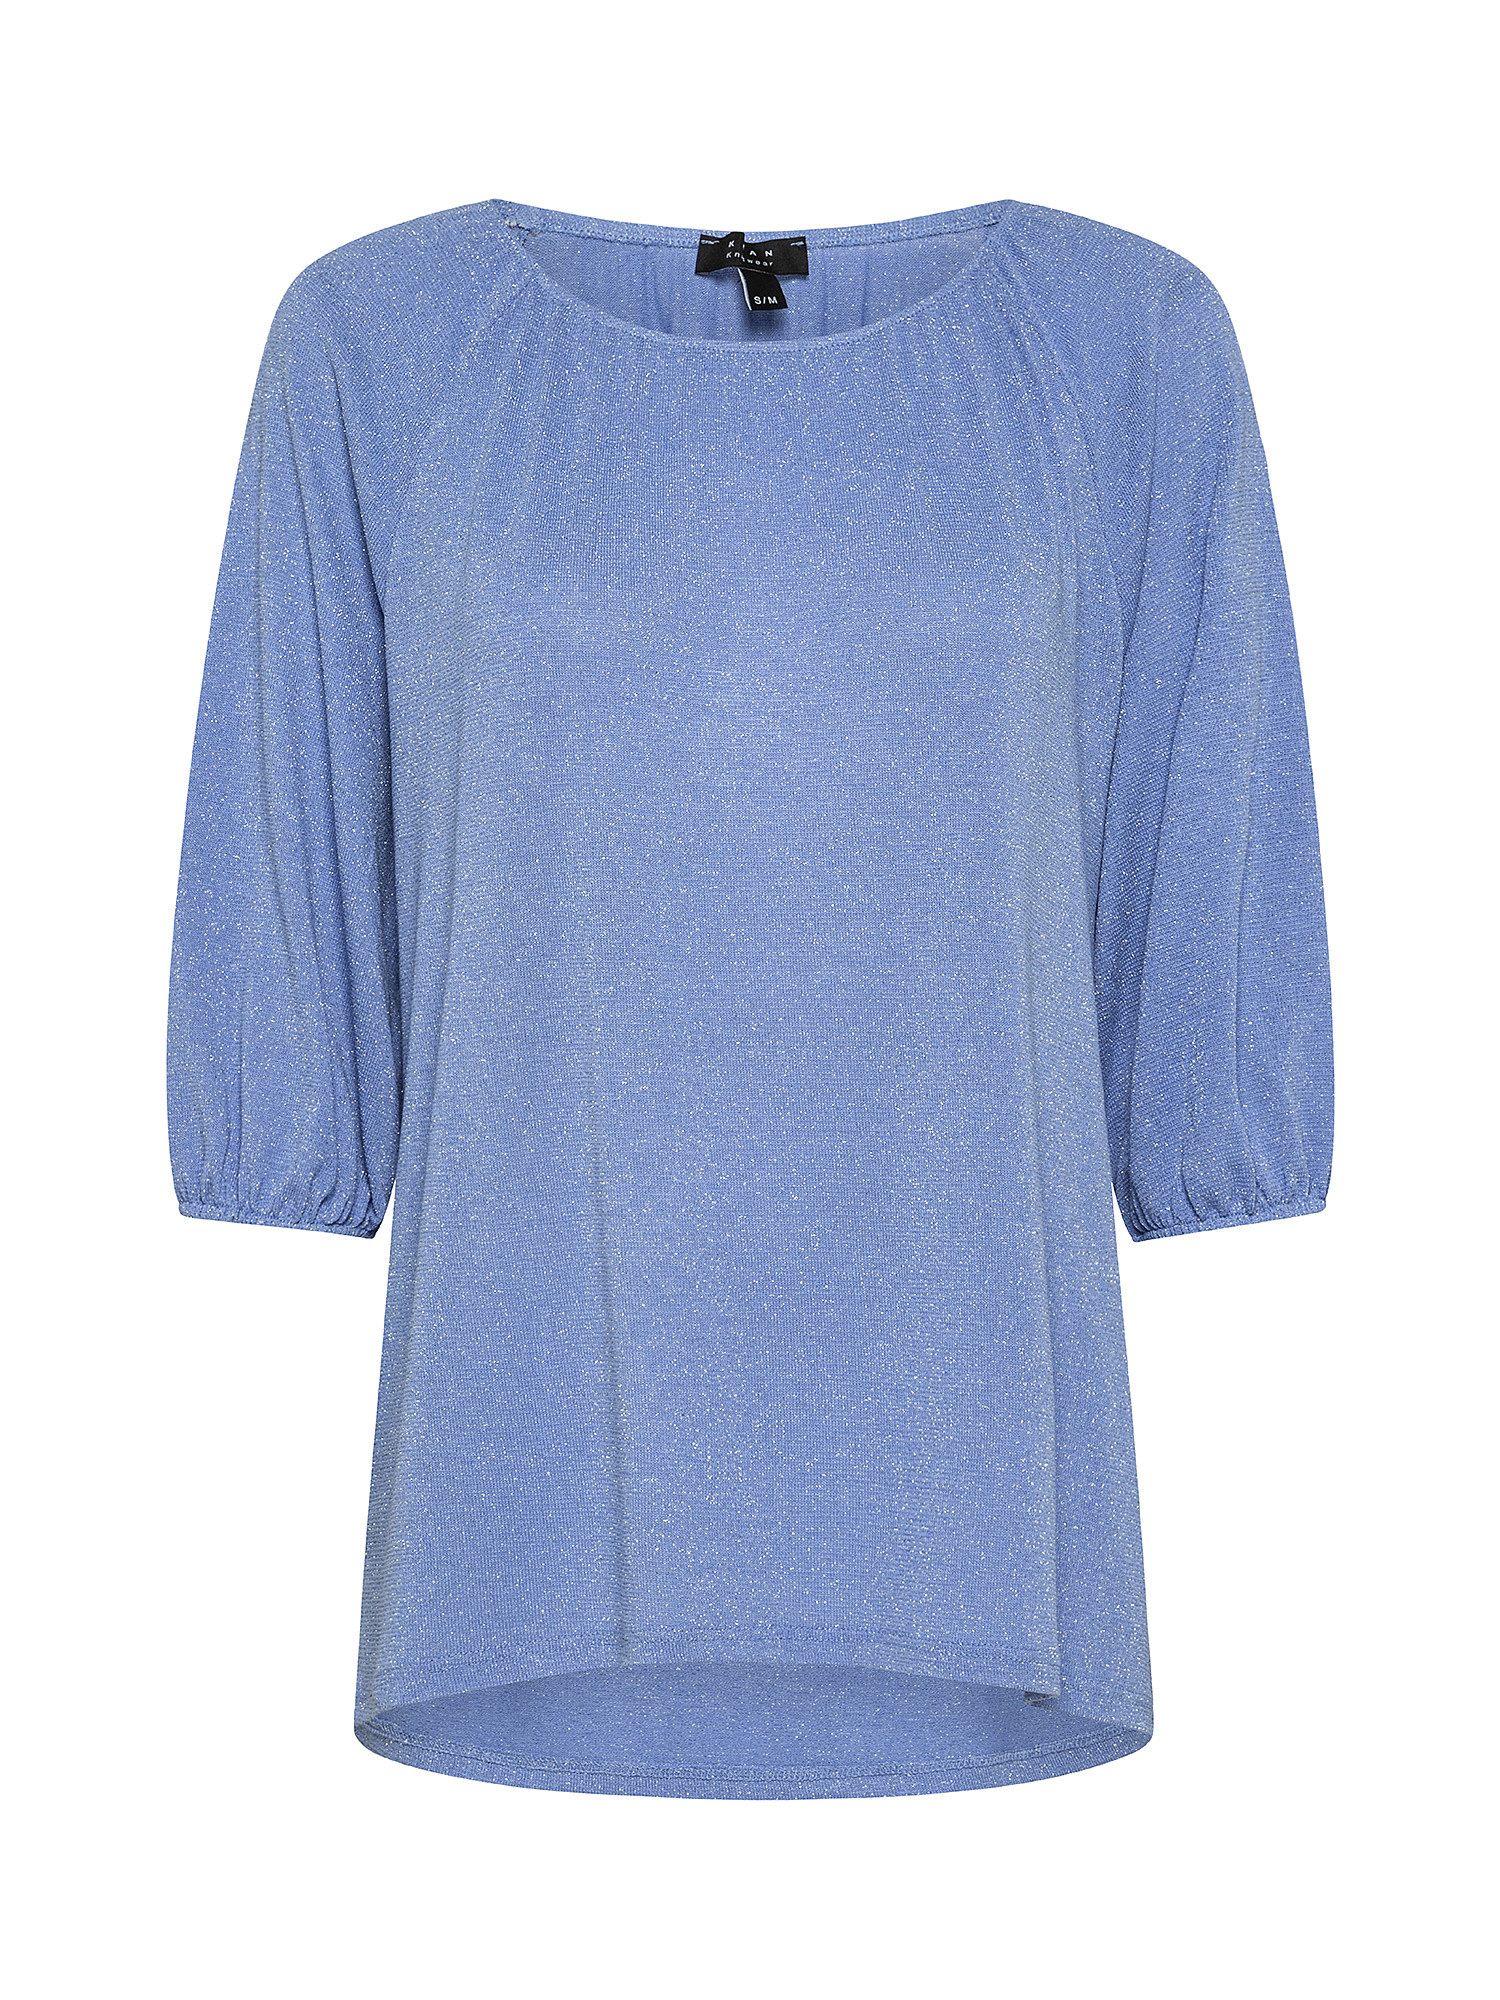 Raglan sleeve T-shirt, Blue Celeste, large image number 0